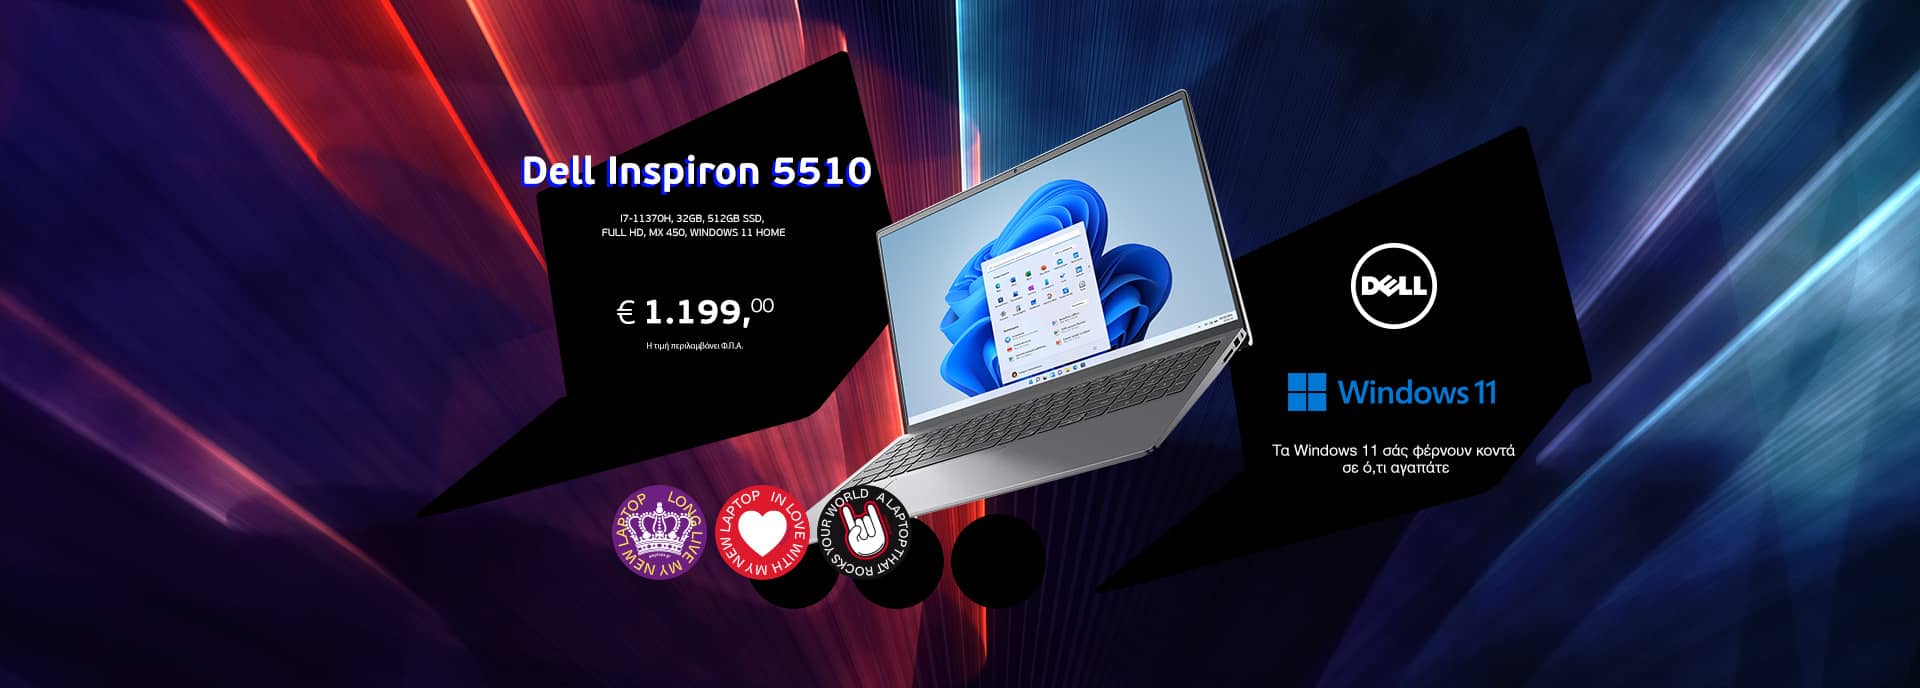 Dell inspiron 5510